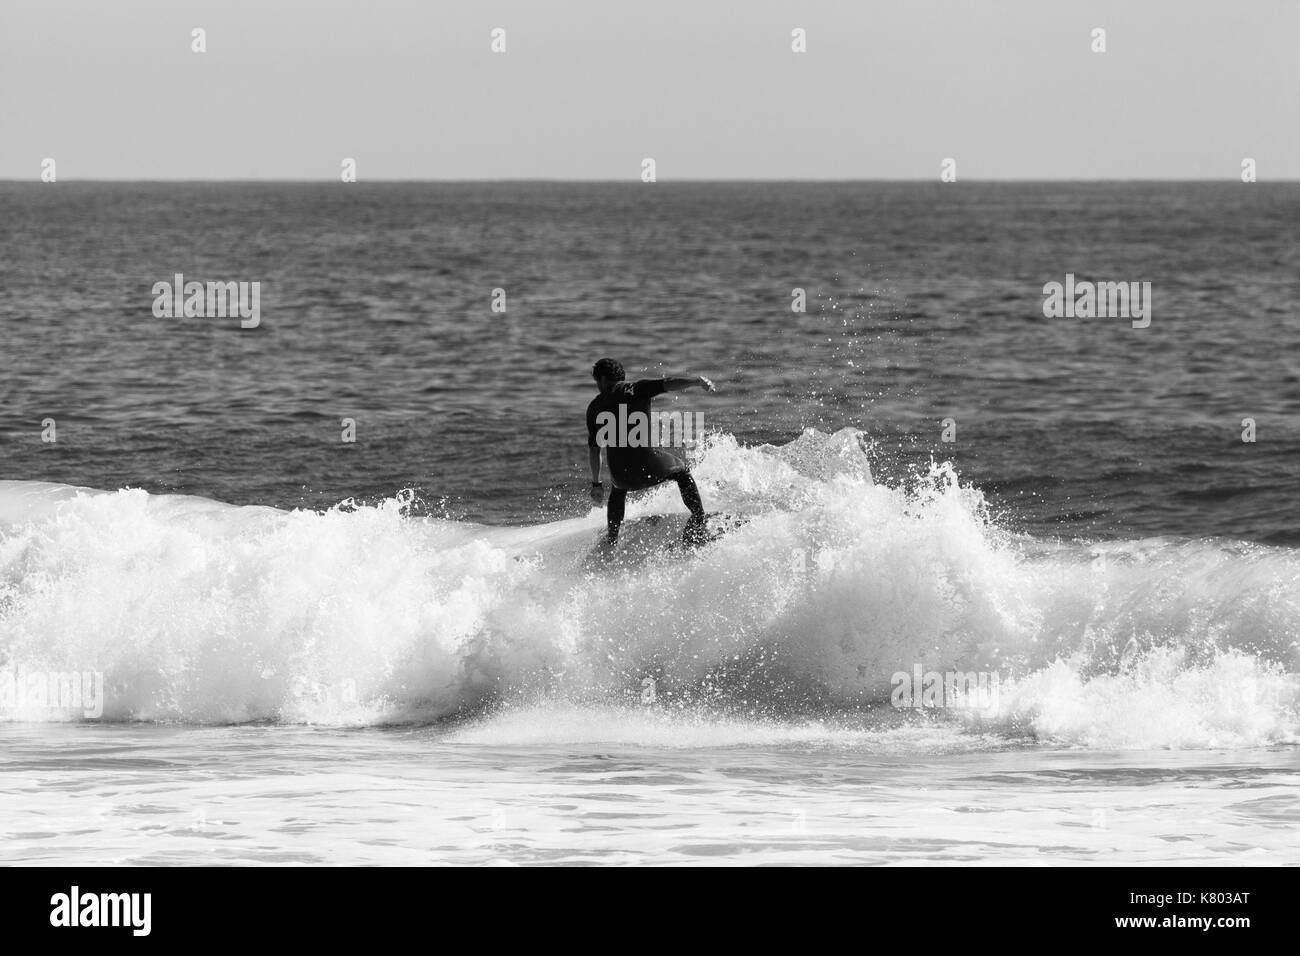 Mar girt, Nueva Jersey - 15 de septiembre de 2017: Los surfistas disfrutan de un día caluroso y soleado en el verano llega a su fin Foto de stock